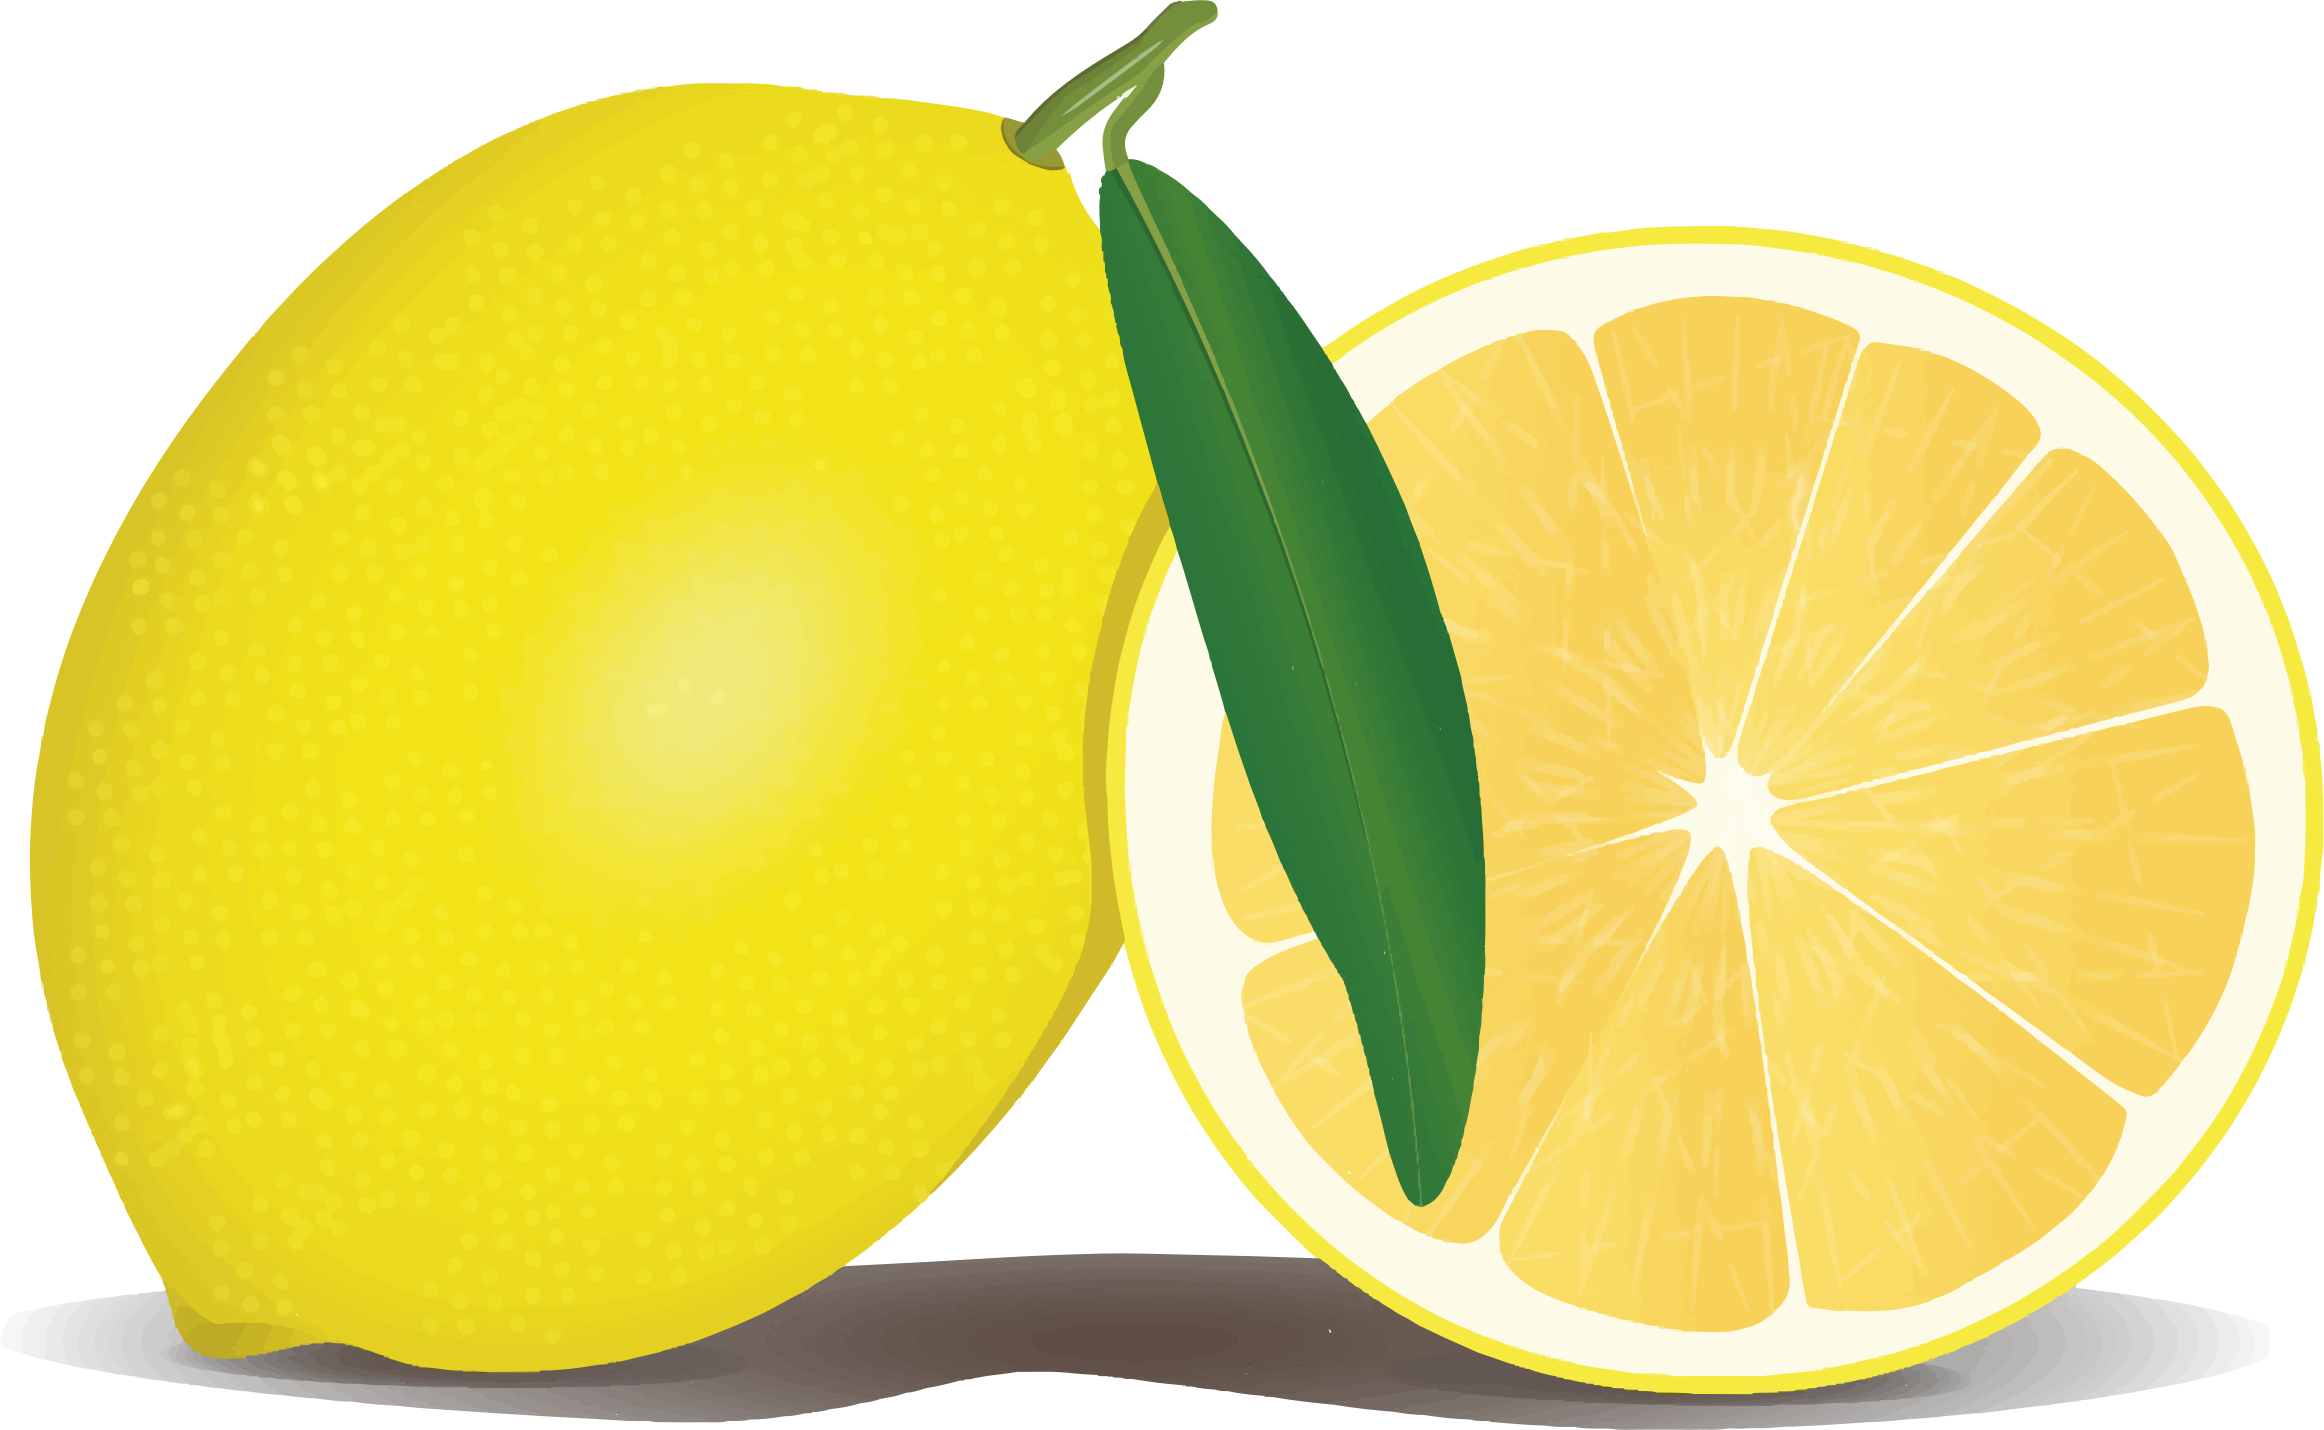 Lemon big image png. Lemons clipart animated